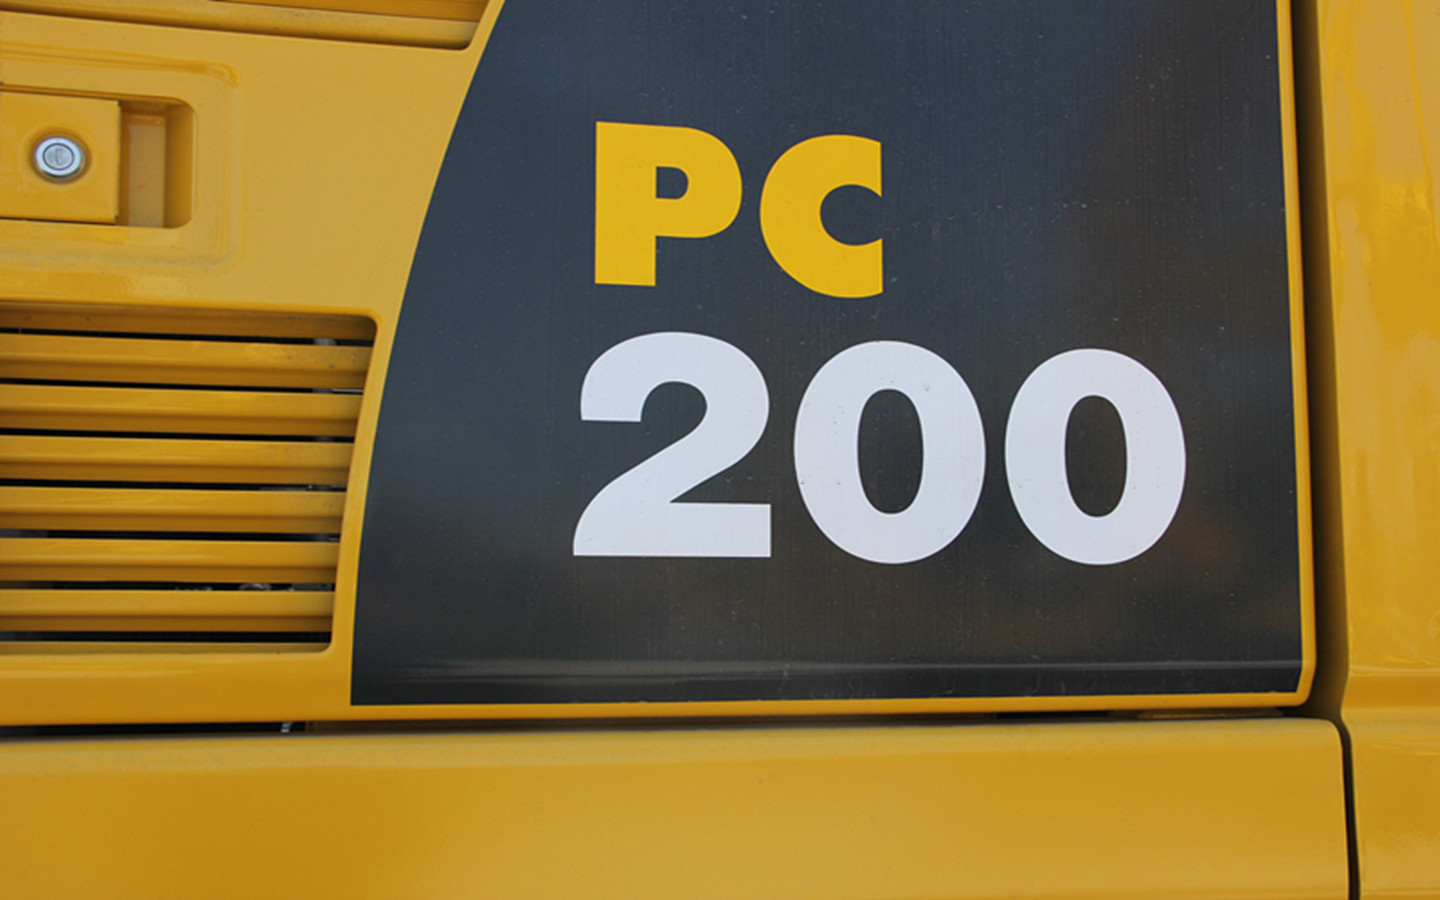 小松PC200-8挖掘机